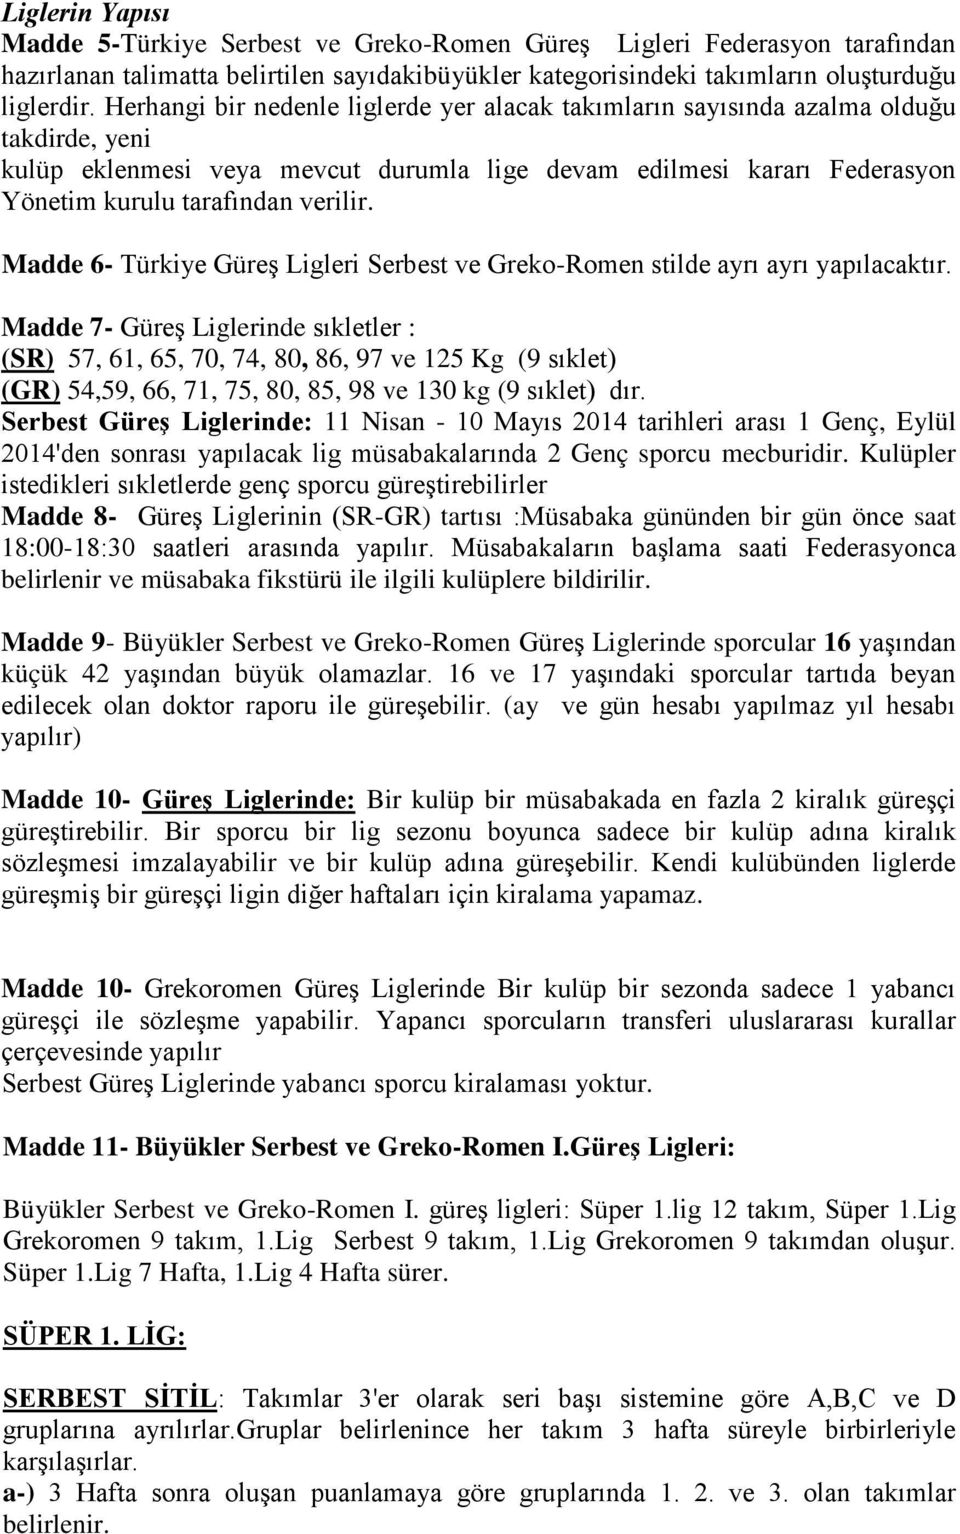 Madde 6- Türkiye Güreş Ligleri Serbest ve Greko-Romen stilde ayrı ayrı yapılacaktır.